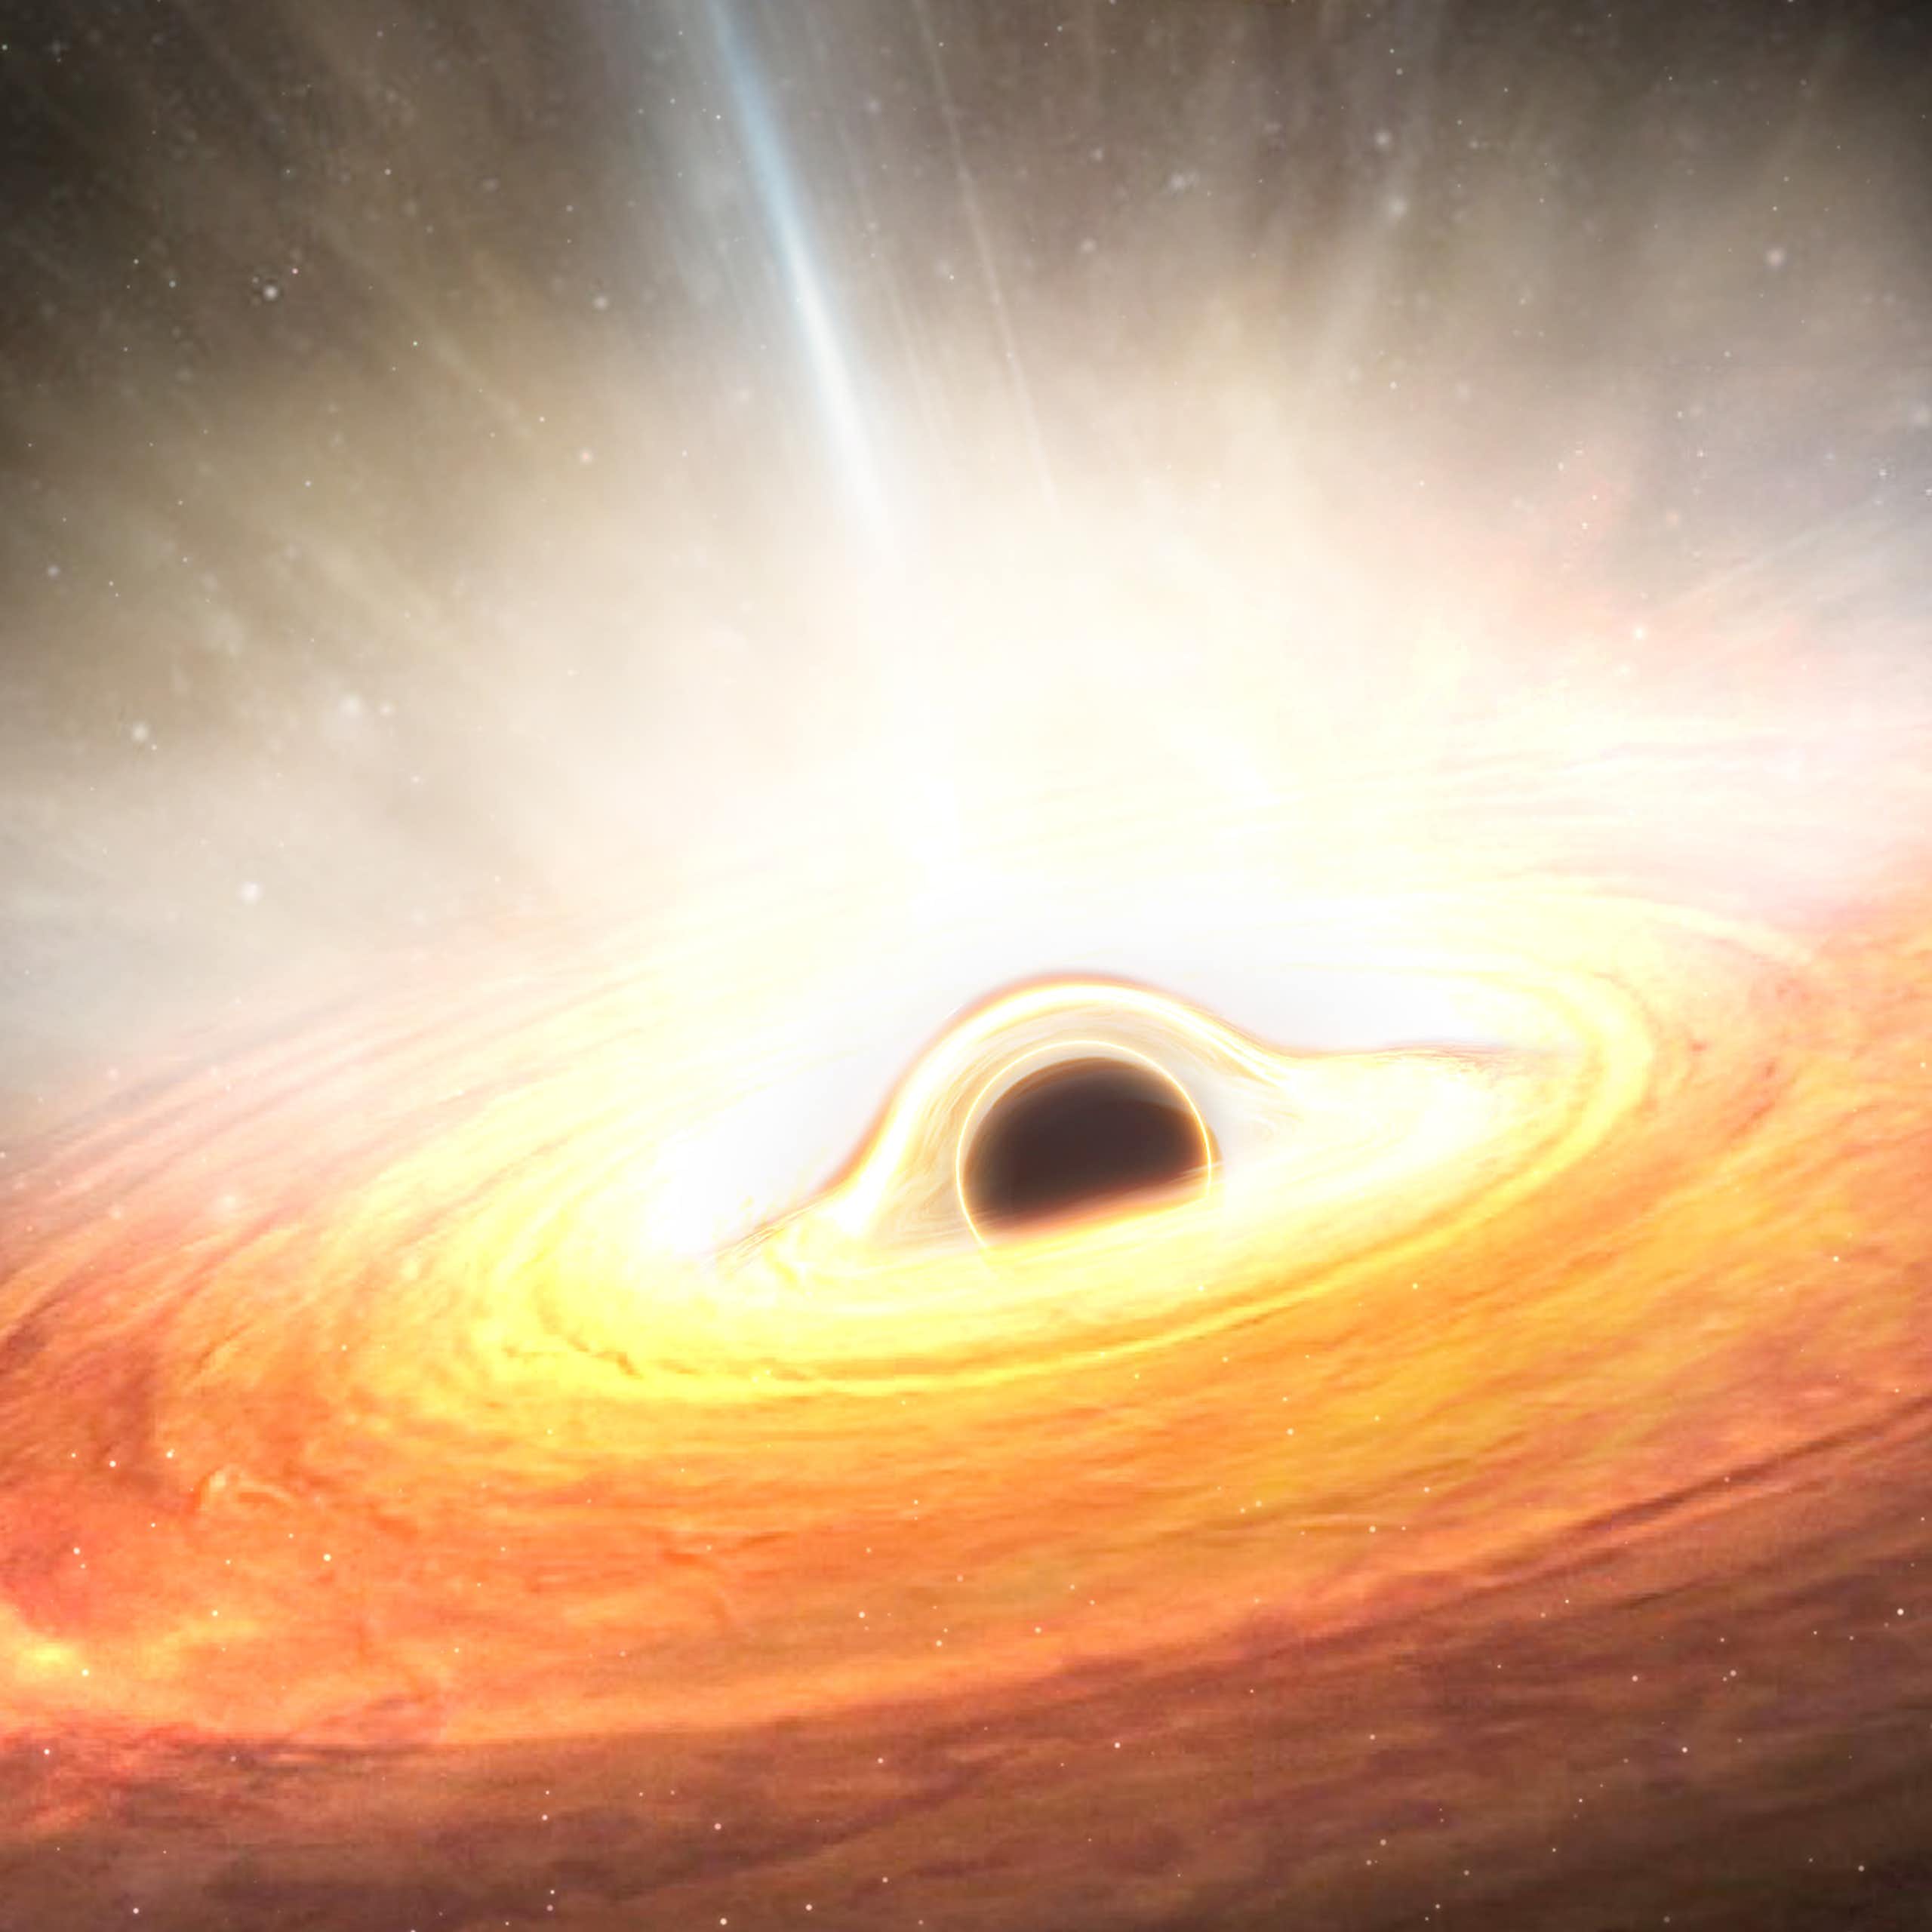 Vue d'artiste d'un trou noir supermassif entouré par un disque d'accrétion, la matière qui gravite autour.